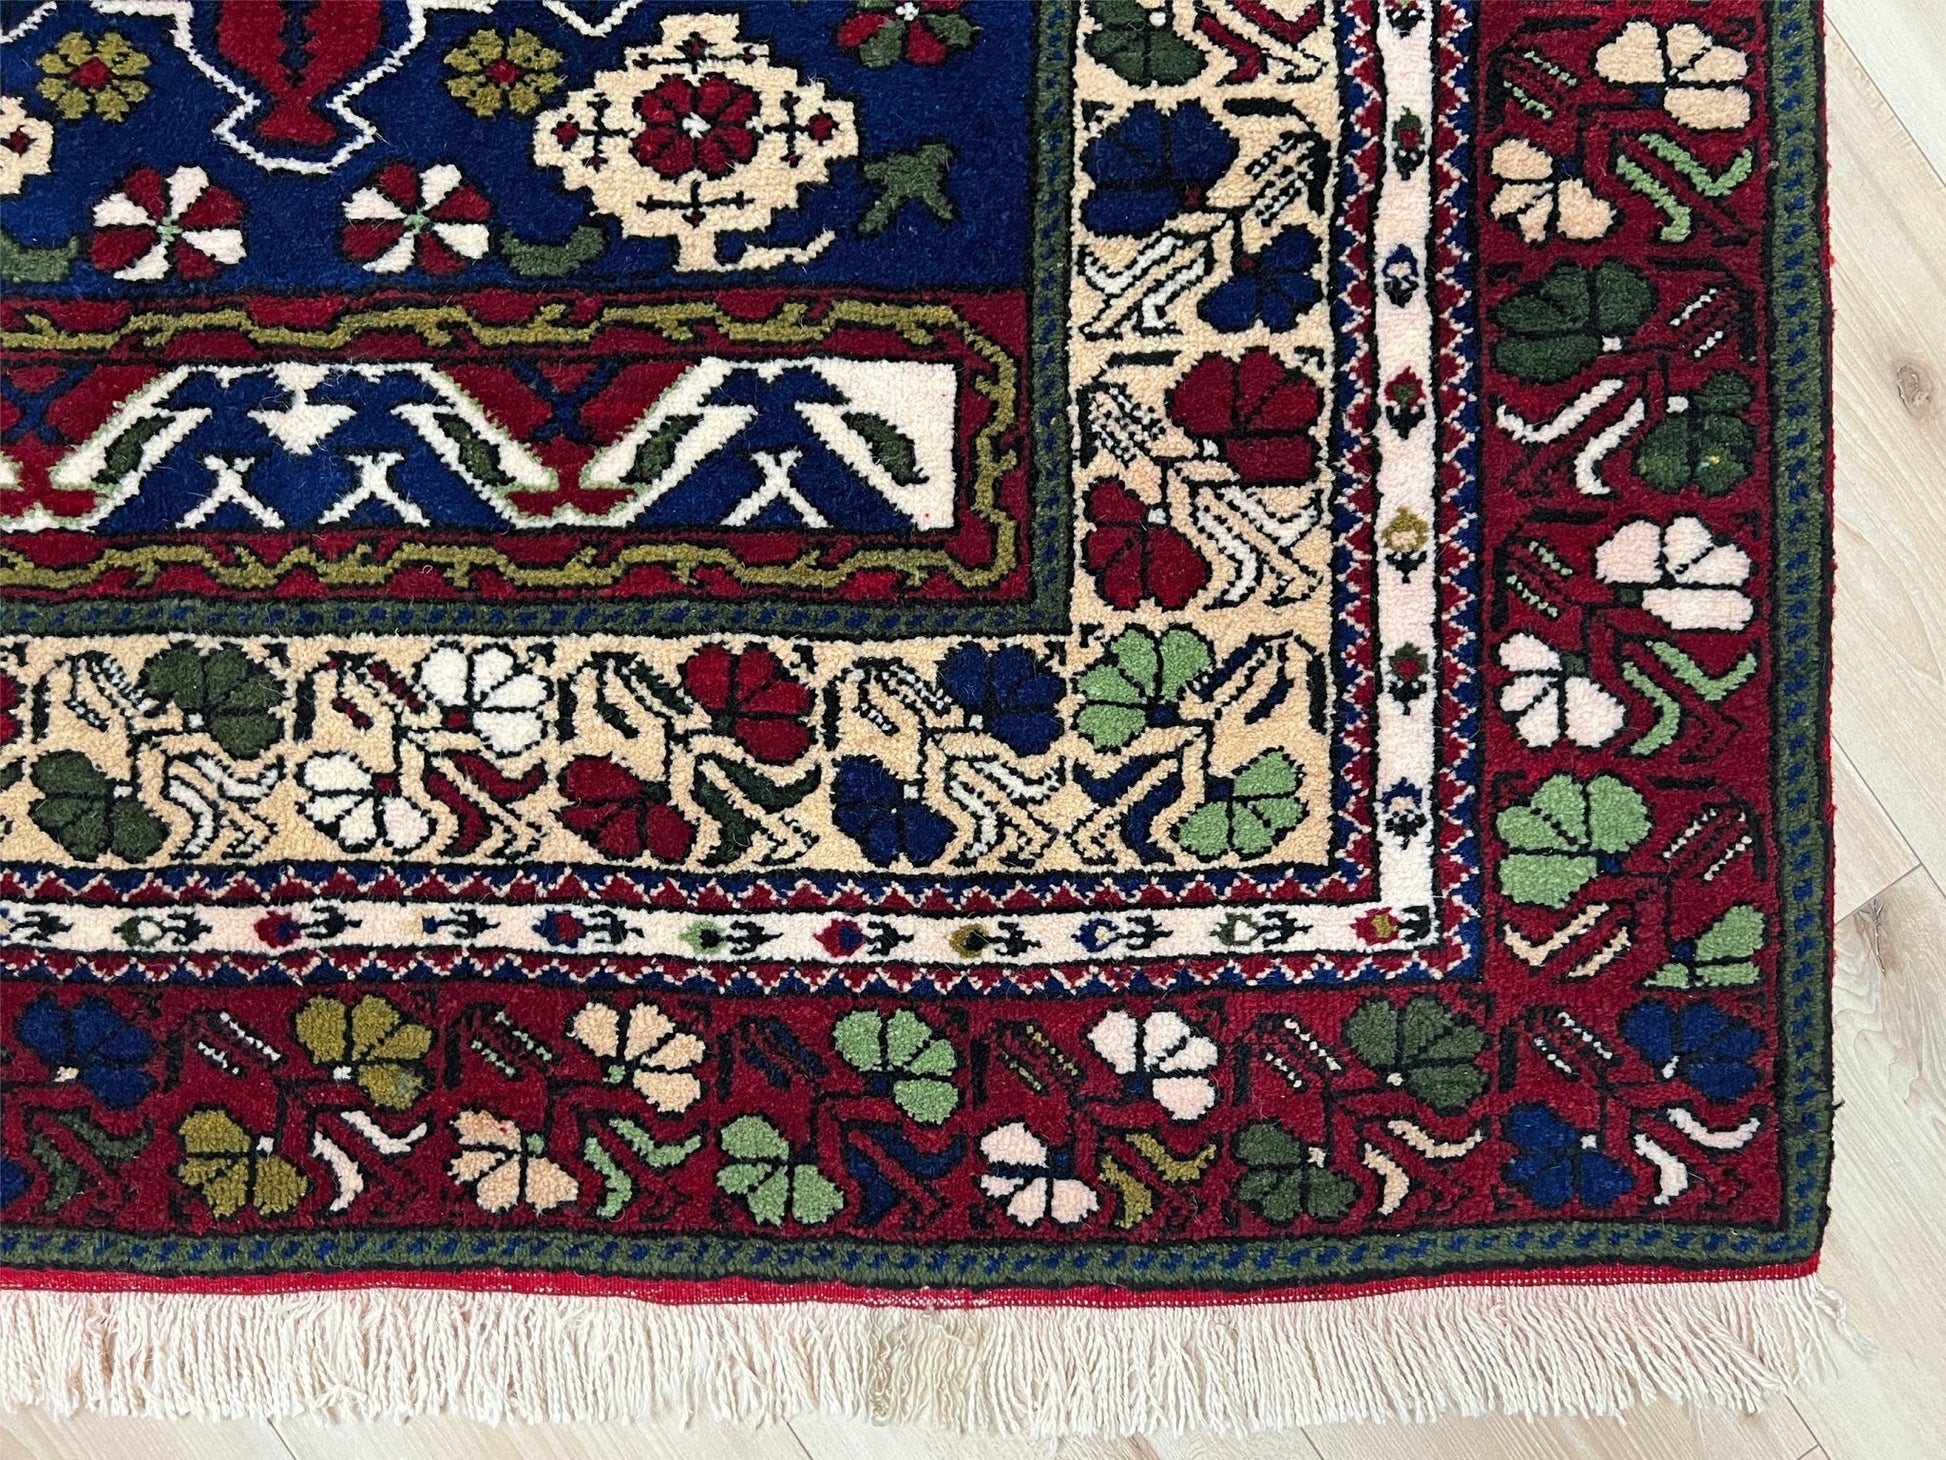 Vintage Turkish rug shop san francisco bay area. Handmade rug Menlo Park Palo Alto. Wool nursery rug. 